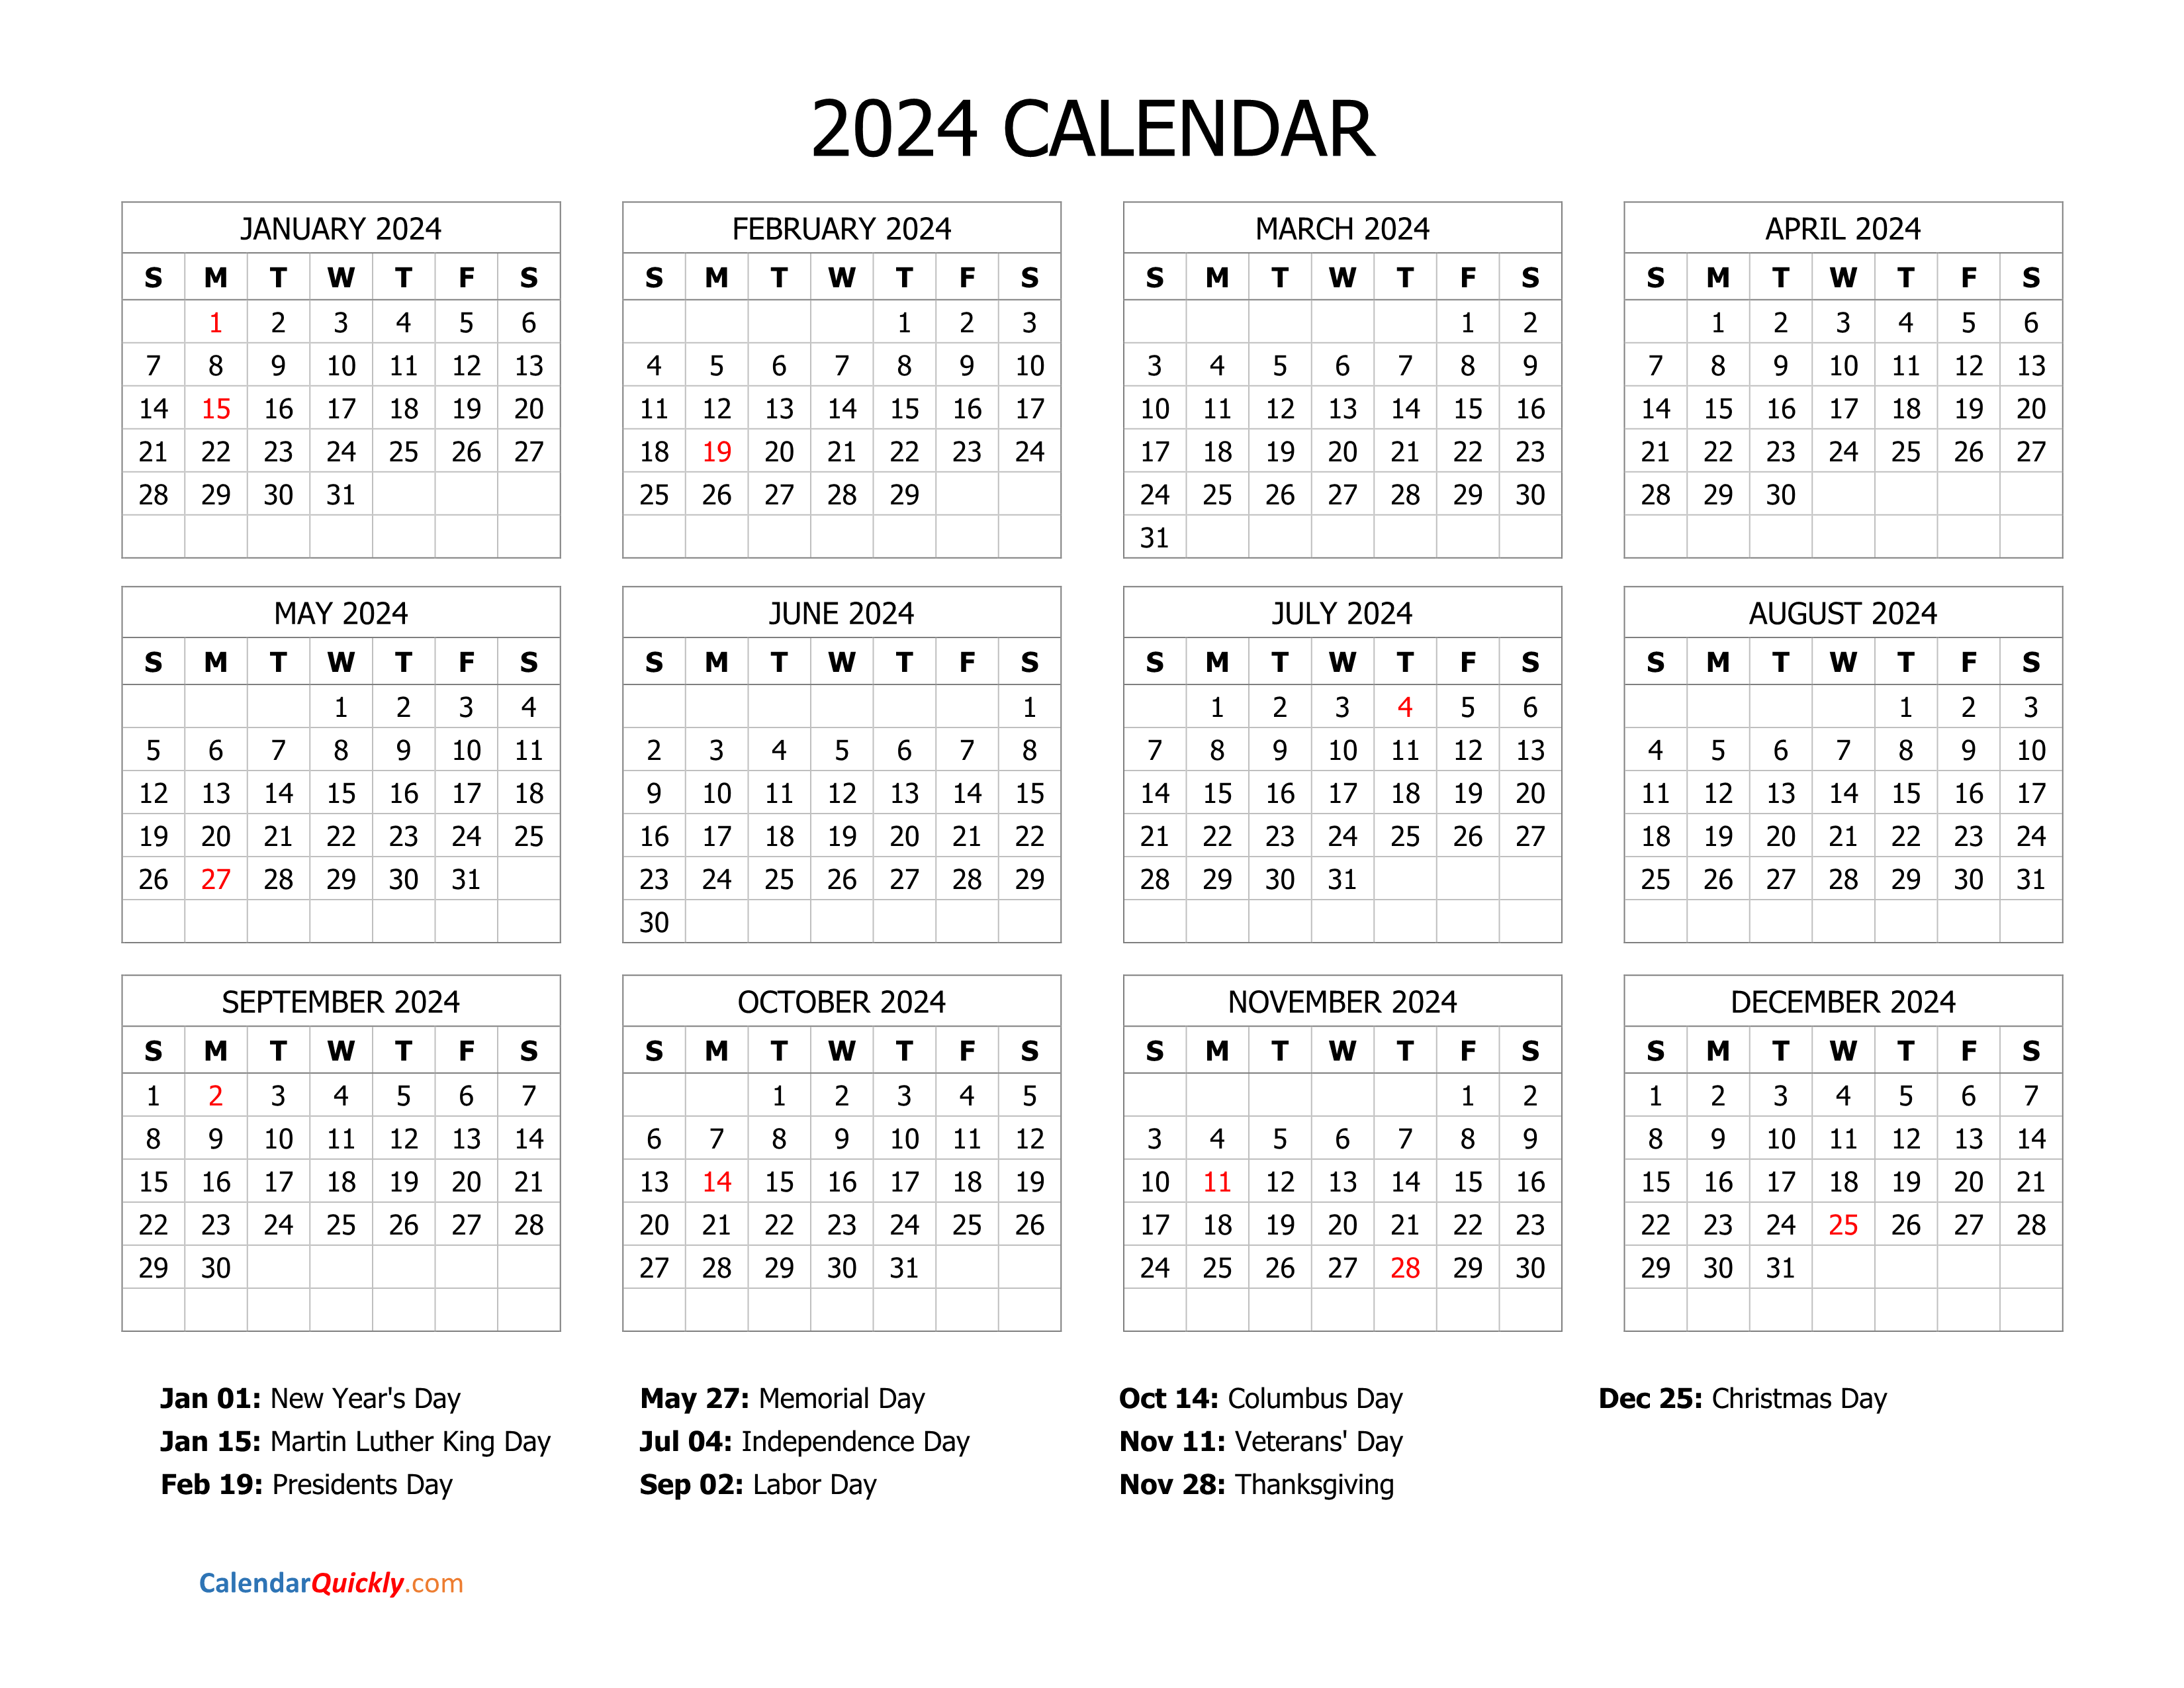 Printable Calendar 2024 With Holidays - Free Printable 2 Page Calendar 2024